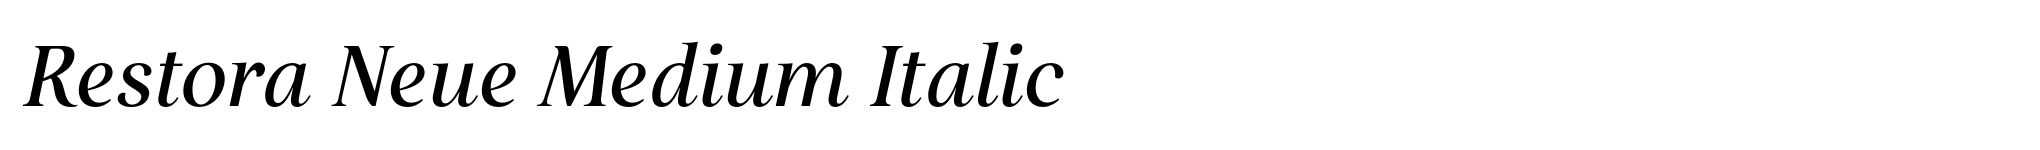 Restora Neue Medium Italic image